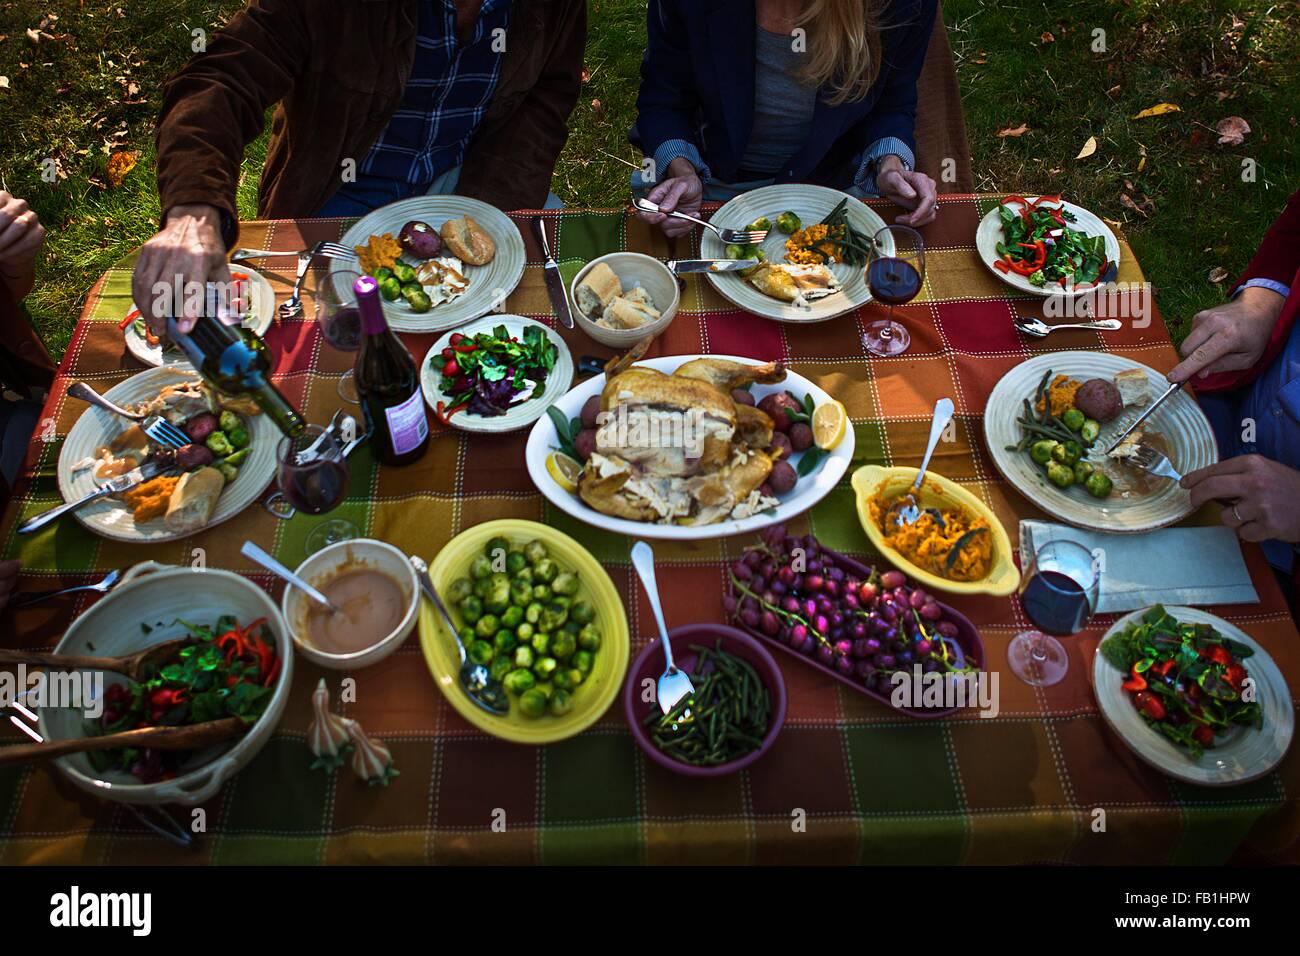 Aufnahme von zwei ältere Ehepaare Essen Braten Abendessen in Gartenparty beschnitten Stockfoto